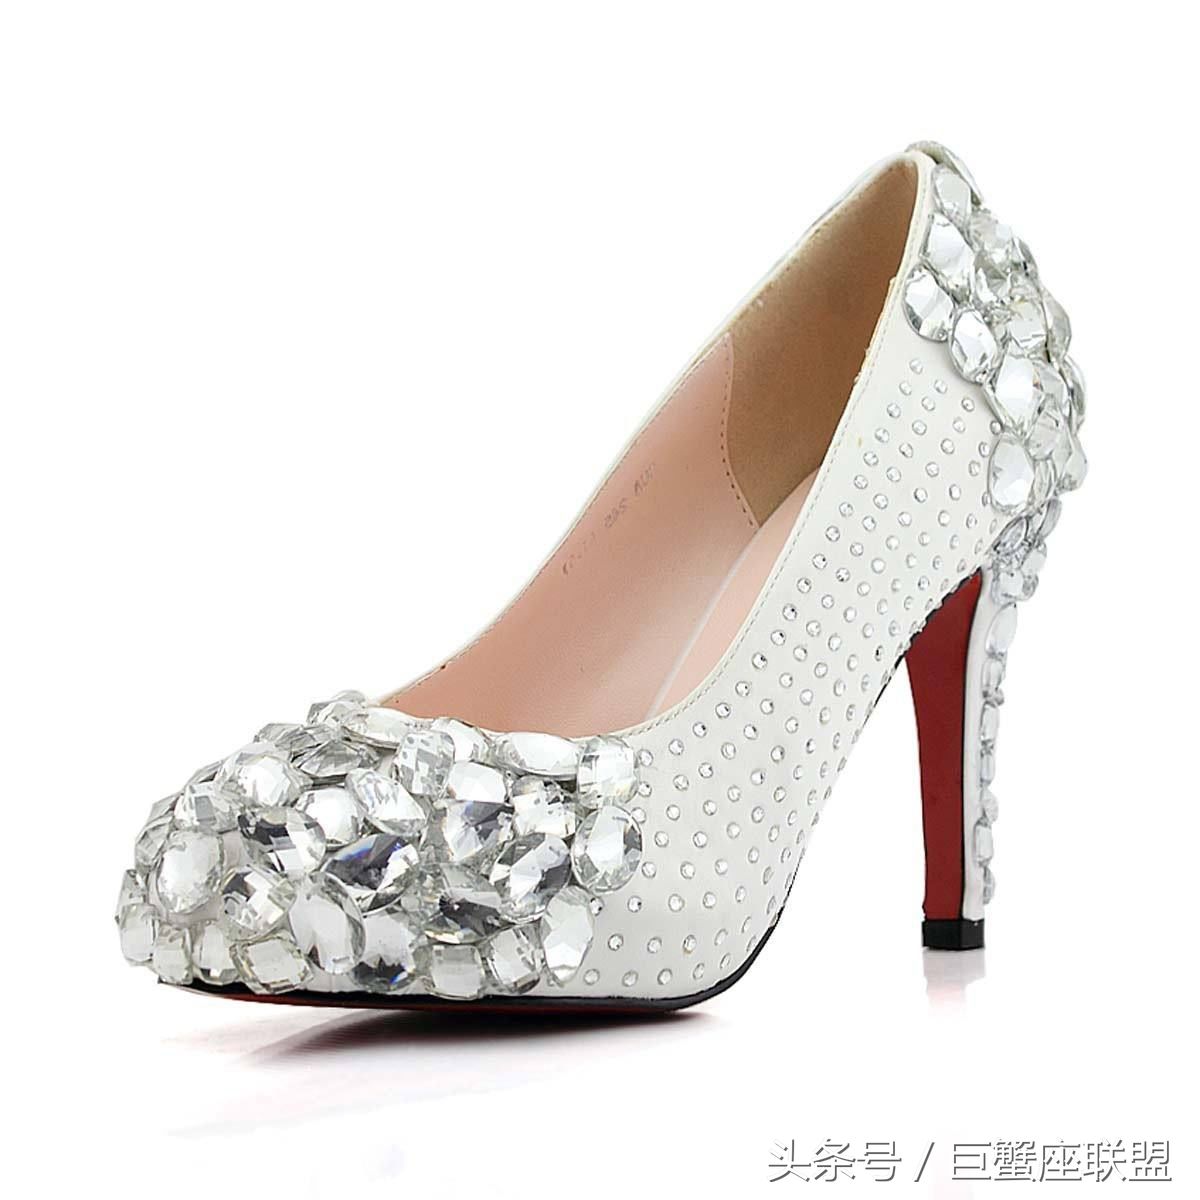 12星座梦幻水晶鞋,巨蟹座的美爆了!你的喜欢吗?